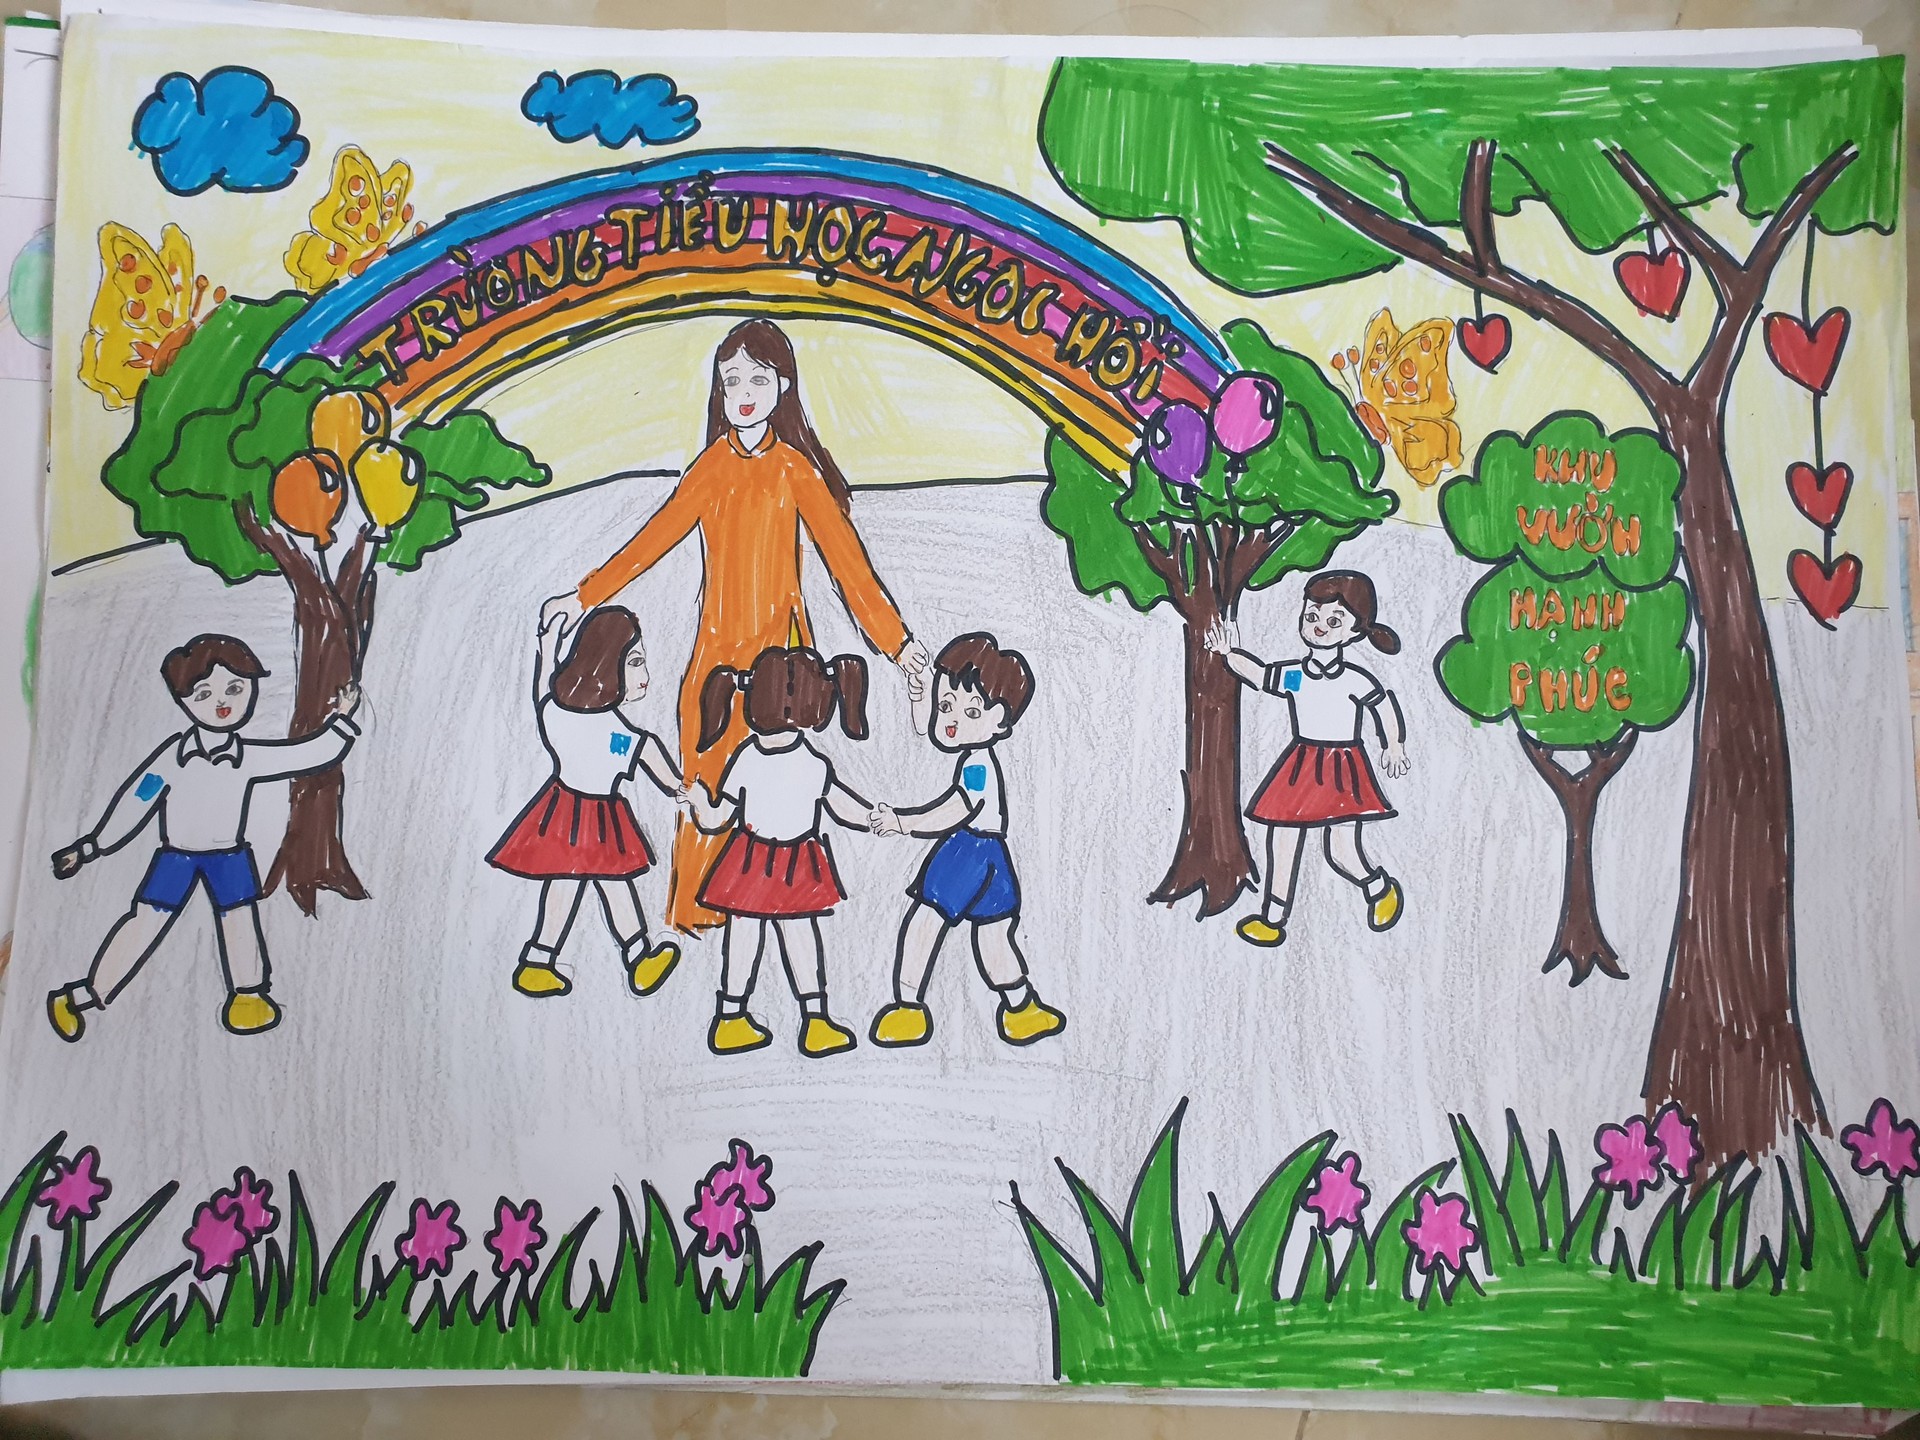 Tranh vẽ 2011 vẽ tranh đề tài ngày Nhà giáo Việt Nam đẹp ý nghĩa